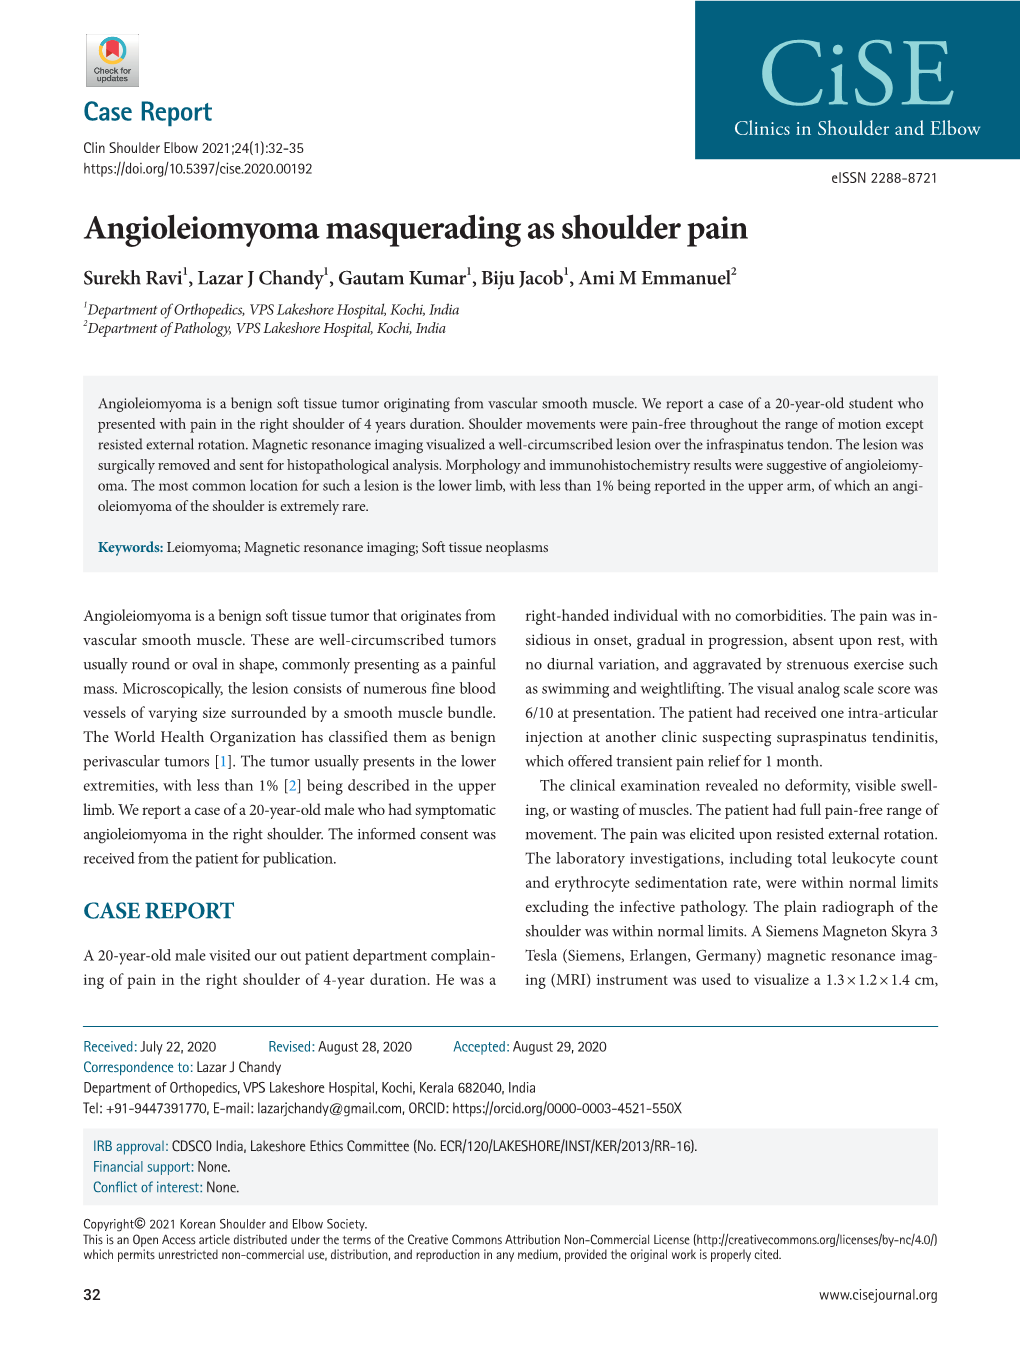 Angioleiomyoma Masquerading As Shoulder Pain